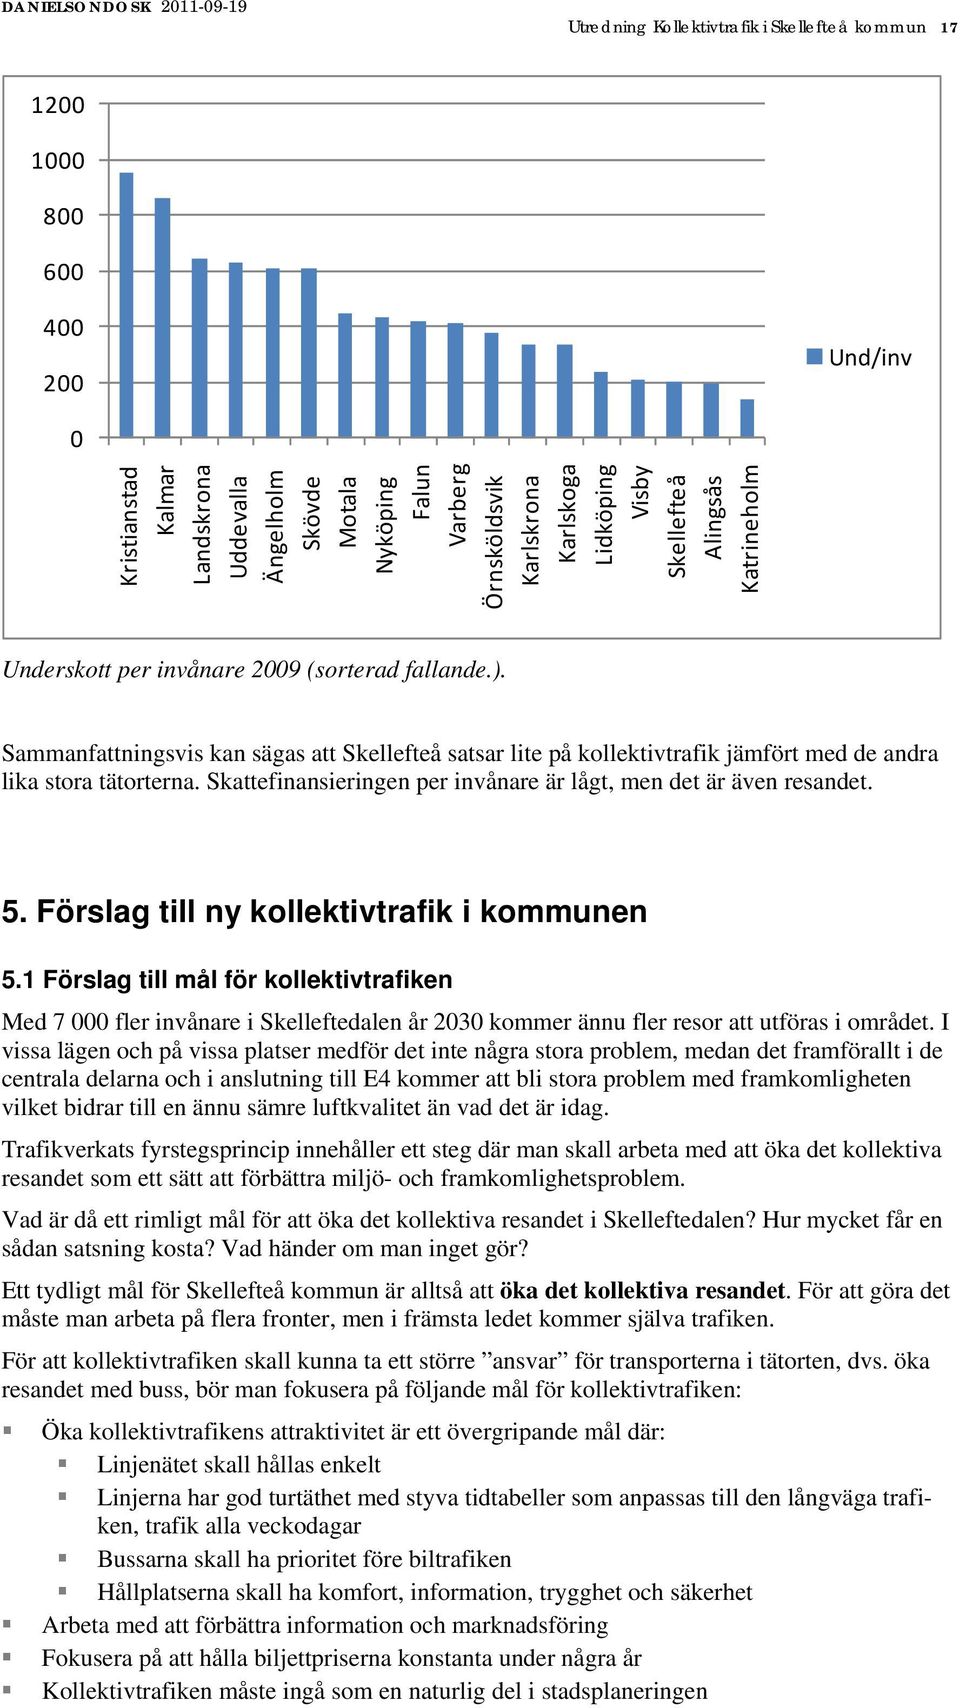 Sammanfattningsvis kan sägas att Skellefteå satsar lite på kollektivtrafik jämfört med de andra lika stora tätorterna. Skattefinansieringen per invånare är lågt, men det är även resandet. 5.